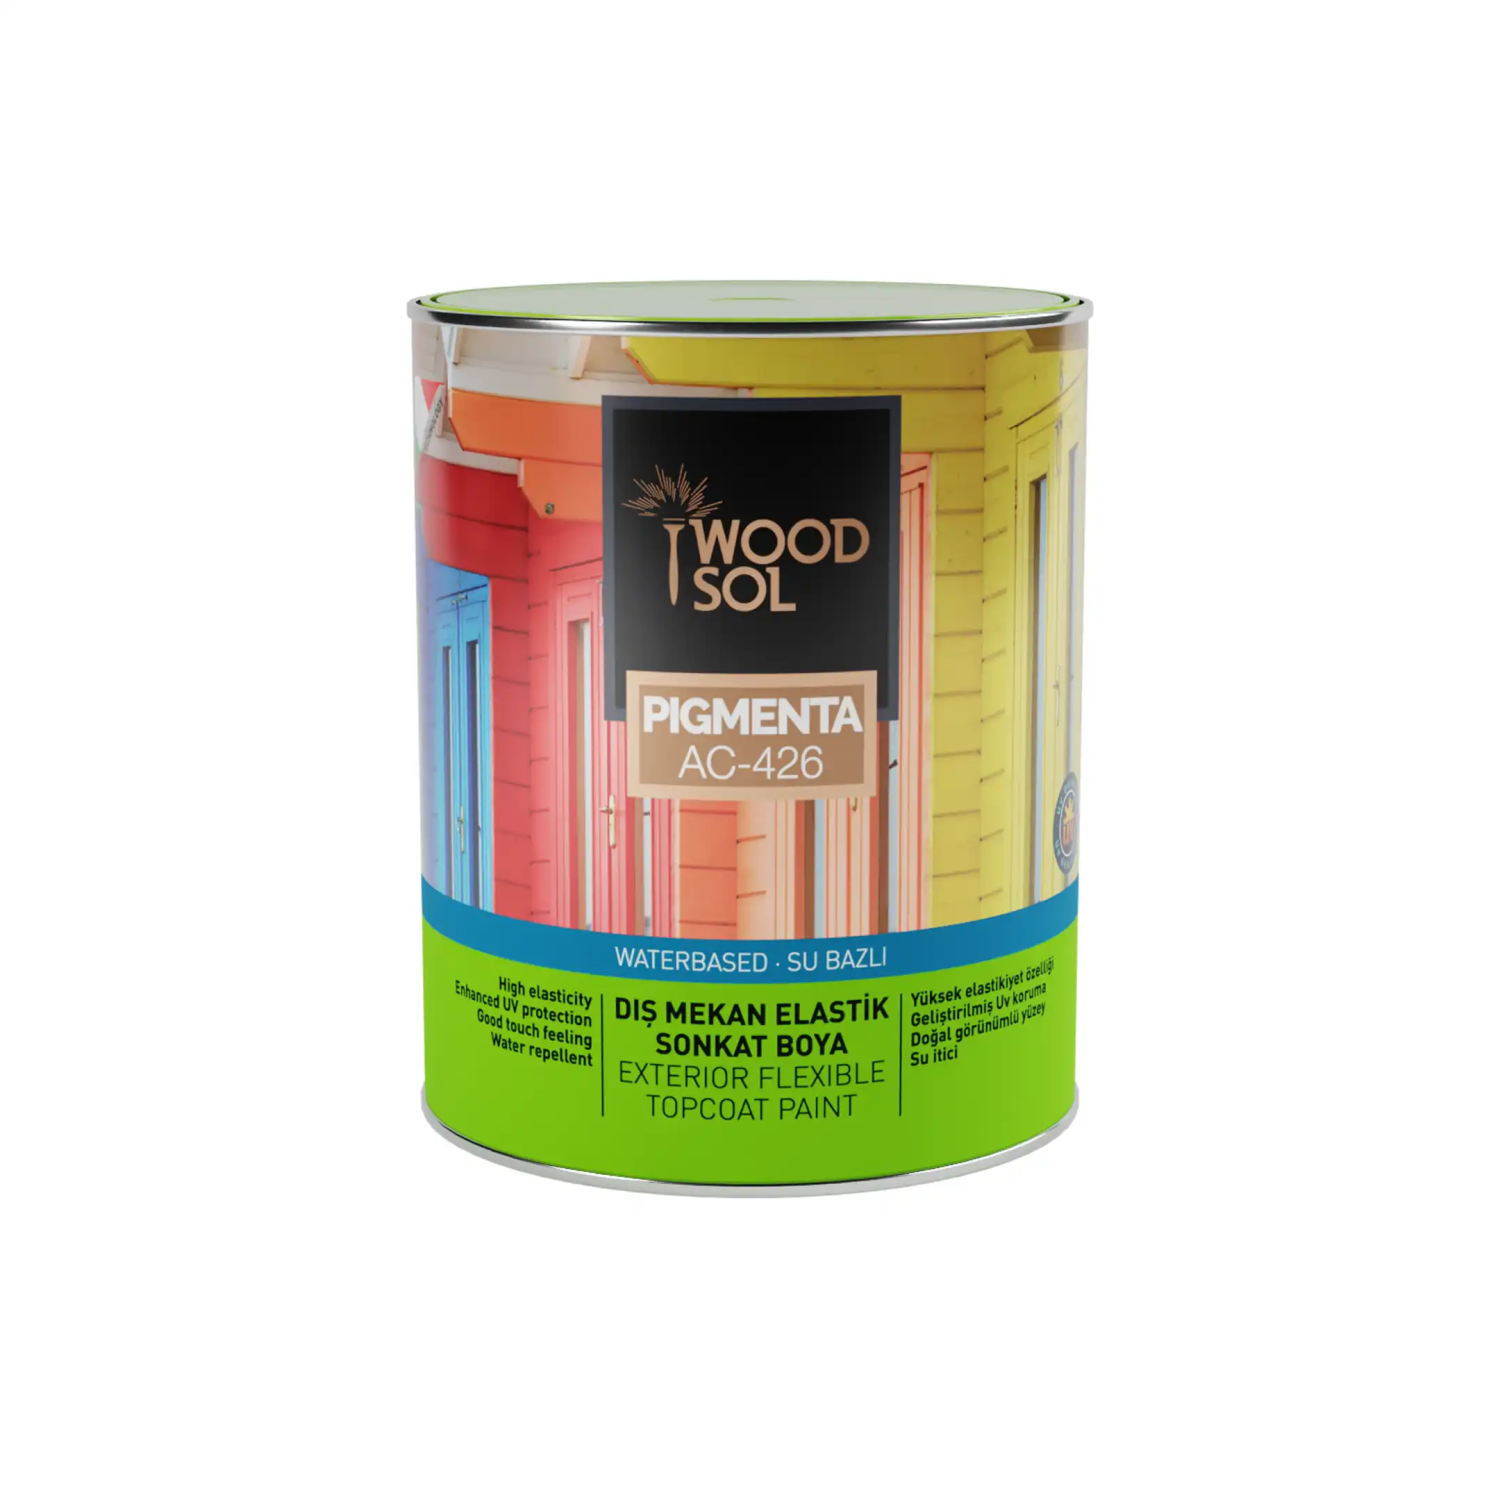 Woodsol Pigmenta Elastik Sonkat Ahşap Boyası 7235 Grey Chıaro 0.75 l - 2